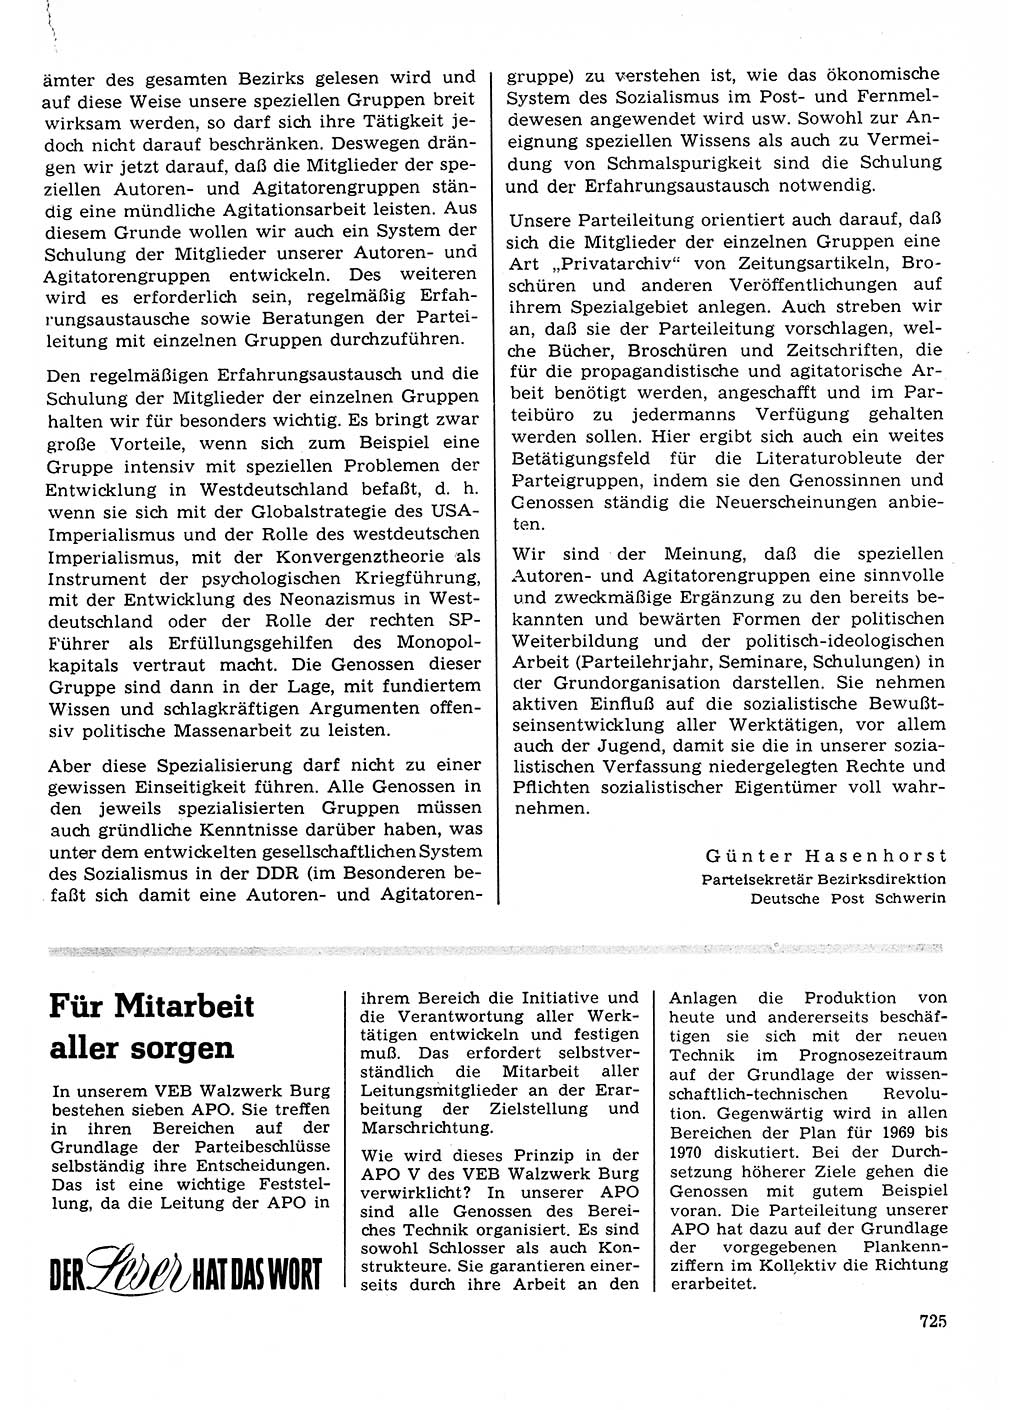 Neuer Weg (NW), Organ des Zentralkomitees (ZK) der SED (Sozialistische Einheitspartei Deutschlands) für Fragen des Parteilebens, 23. Jahrgang [Deutsche Demokratische Republik (DDR)] 1968, Seite 725 (NW ZK SED DDR 1968, S. 725)